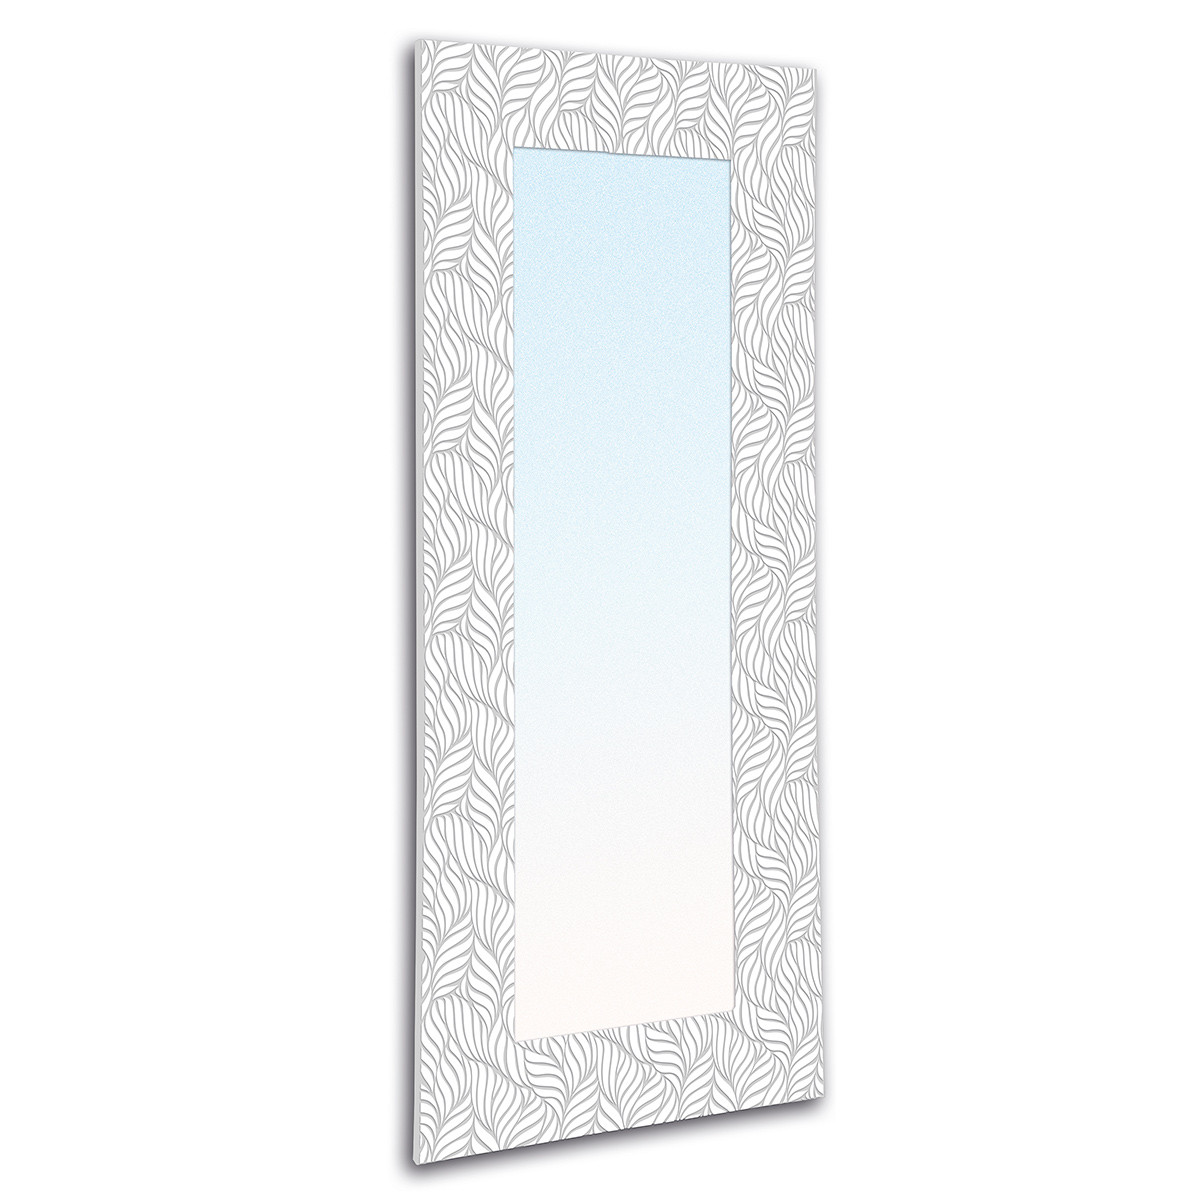 Specchio Mirror Petali White&White P3236A 